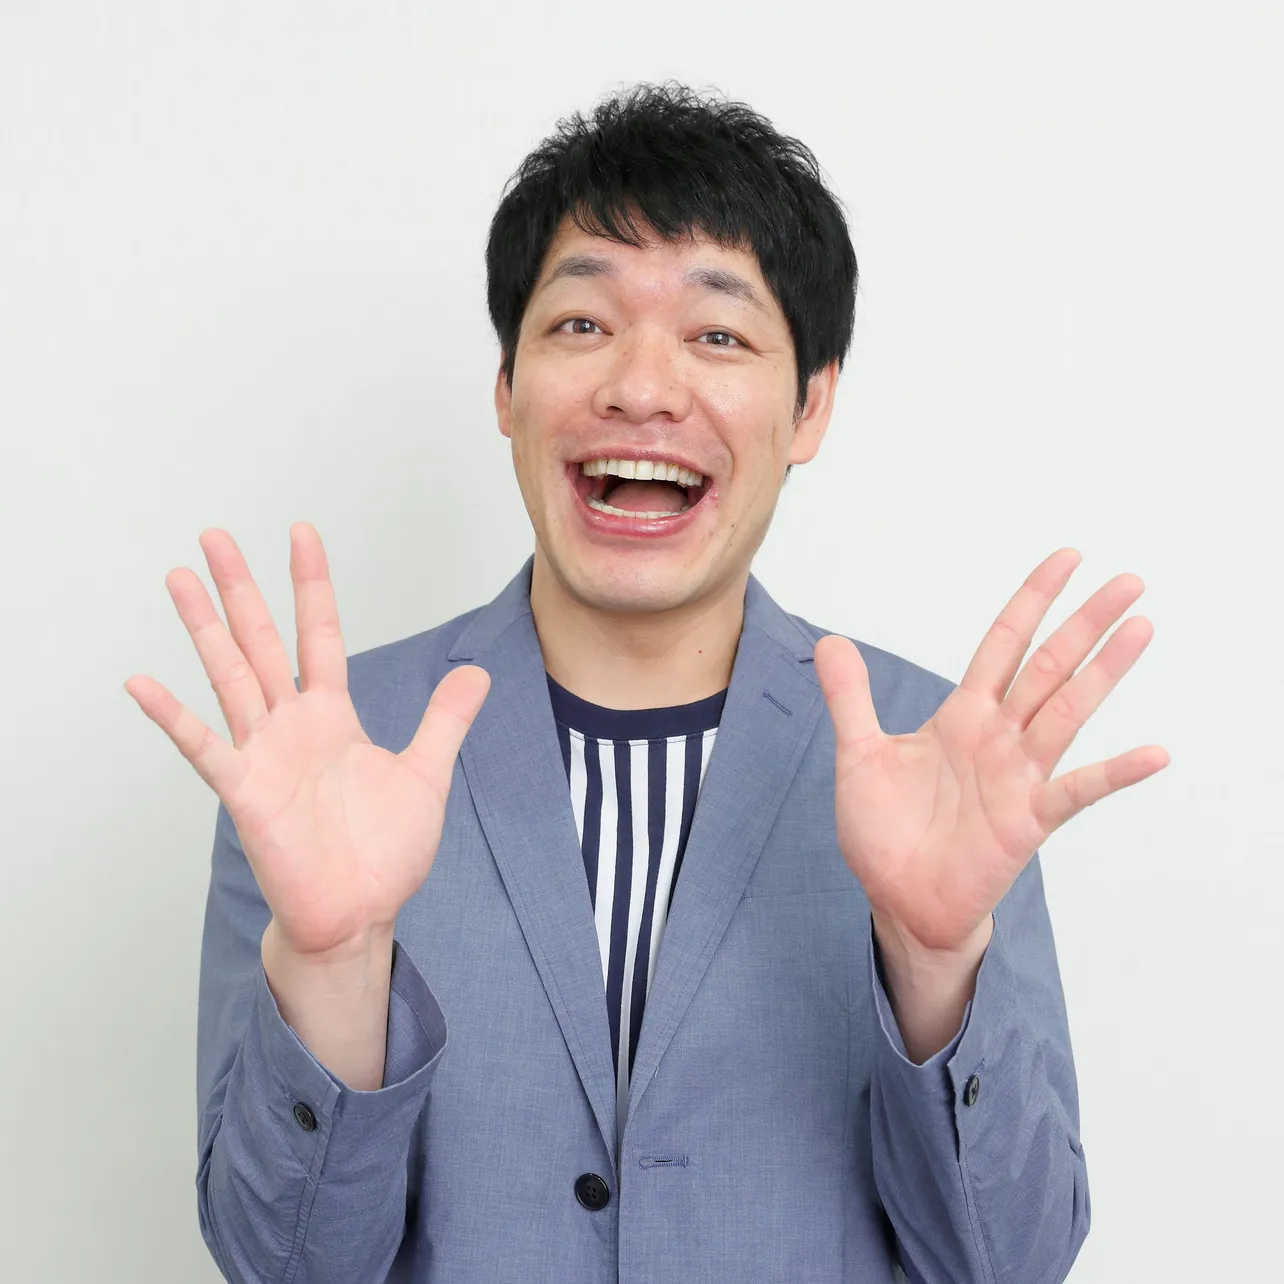 川島明(かわしま・あきら)＝1979年2月3日生まれ、京都府出身。お笑いコンビ・麒麟のボケ担当。漫才をはじめ、「ウワサのお客さま」(フジテレビ系)などバラエティー番組でも活躍中